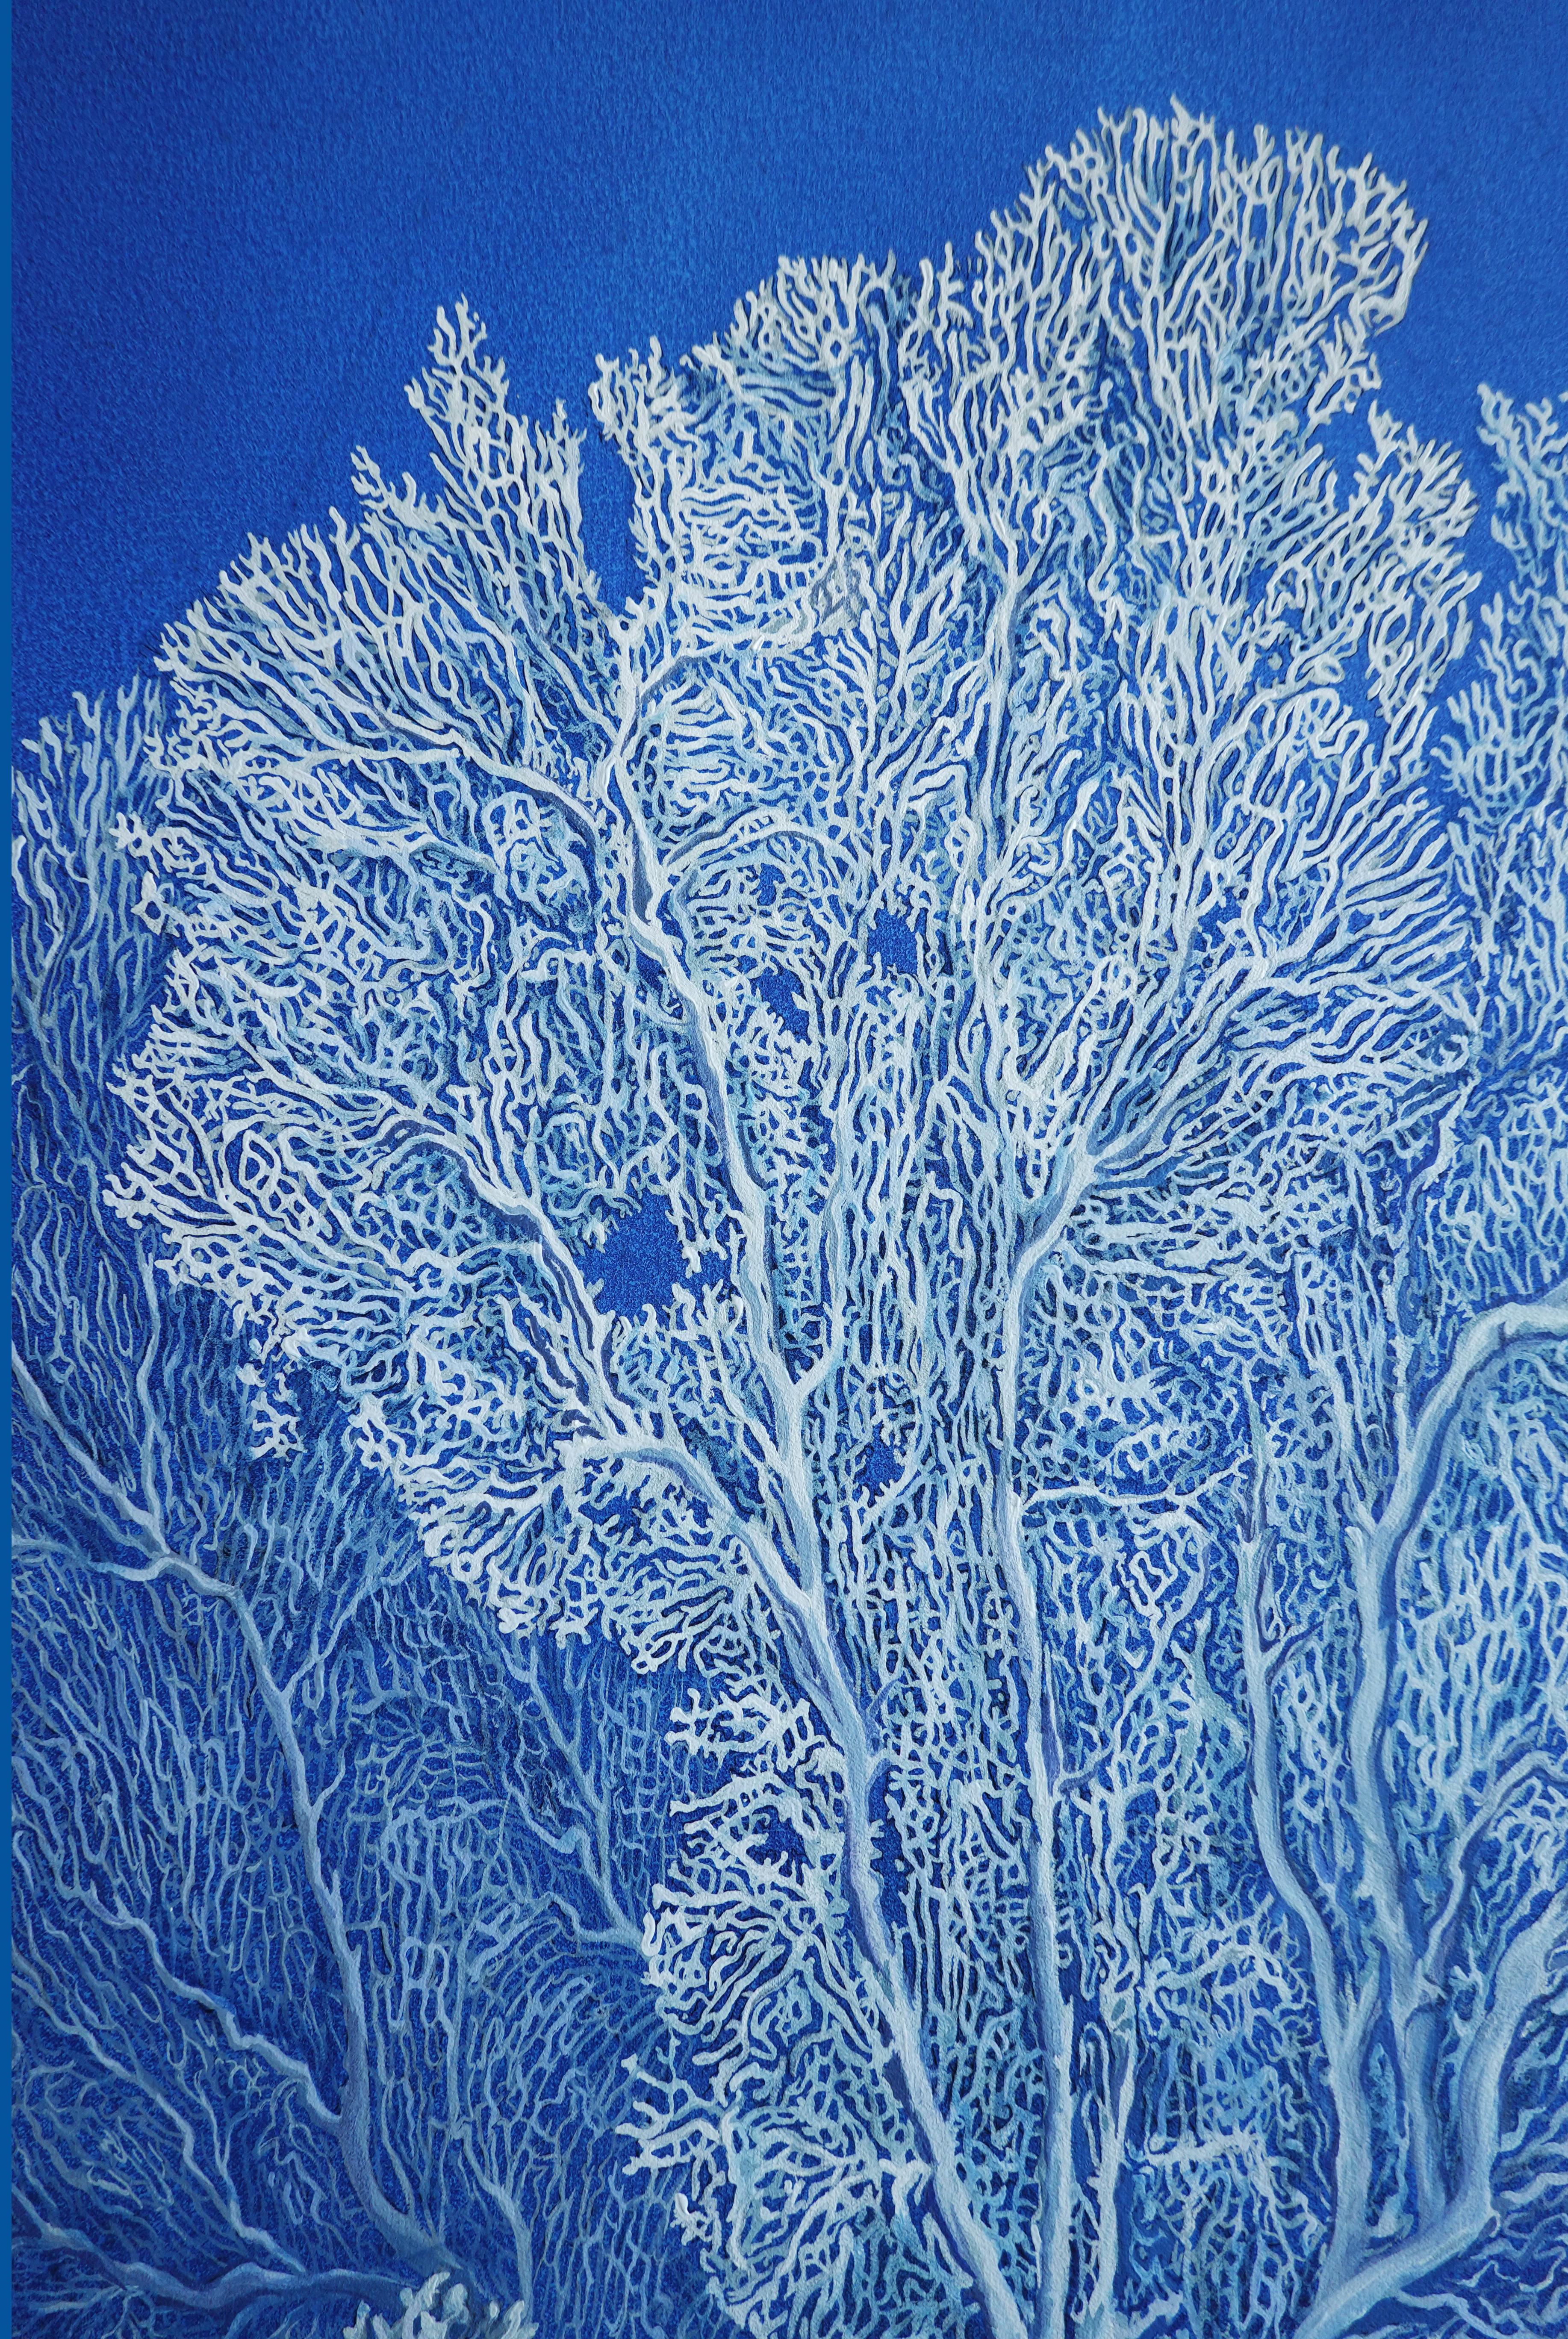 Coral Garden (Océan) - huile sur toile, réalisée en blanc et en bleu - Réalisme Painting par Nikolina Kovalenko